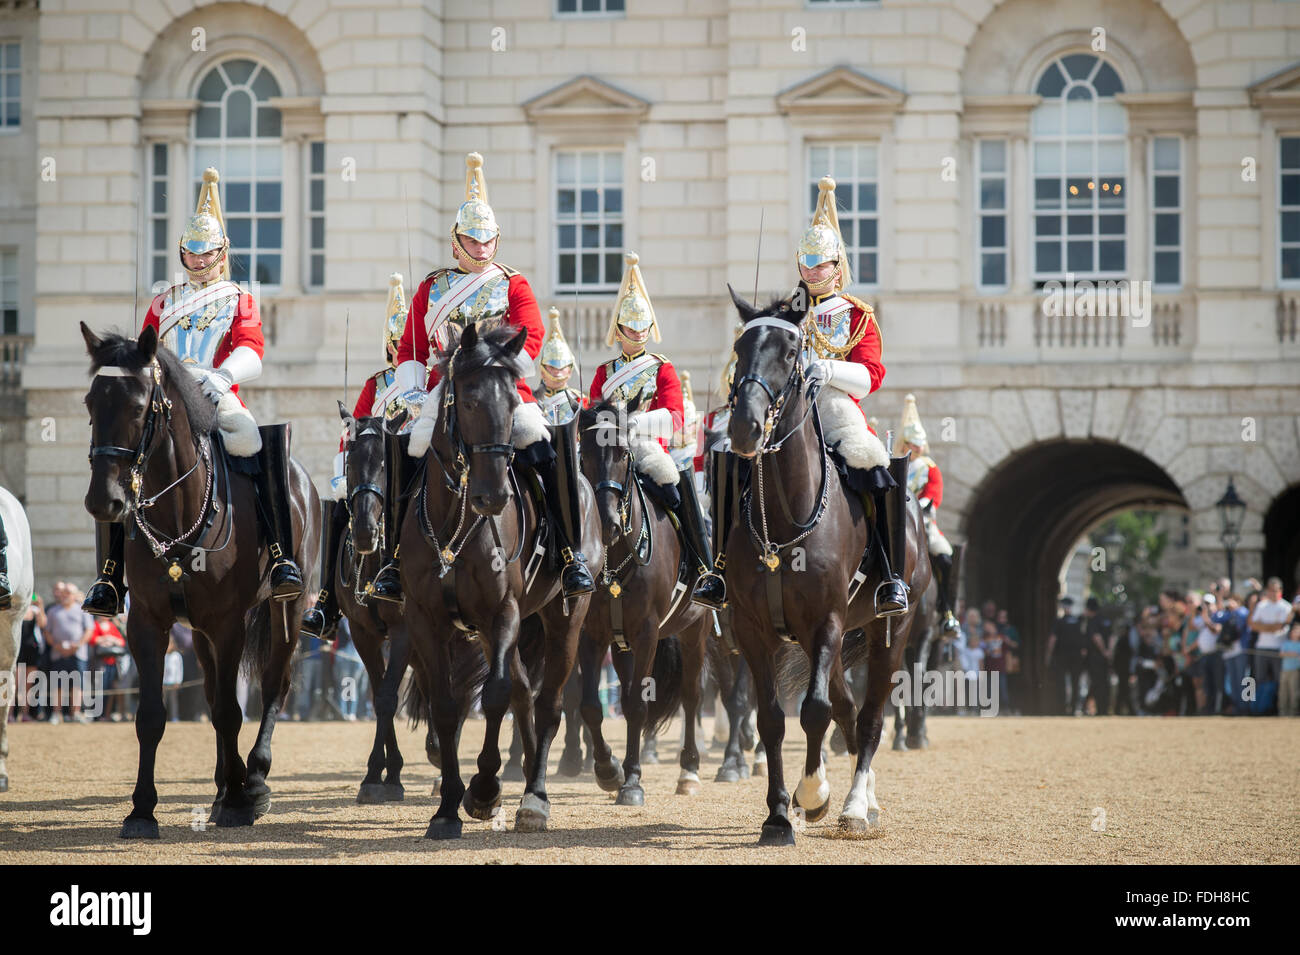 Londres, Inglaterra - Cambio de guardia a caballo desfile protectores Foto de stock